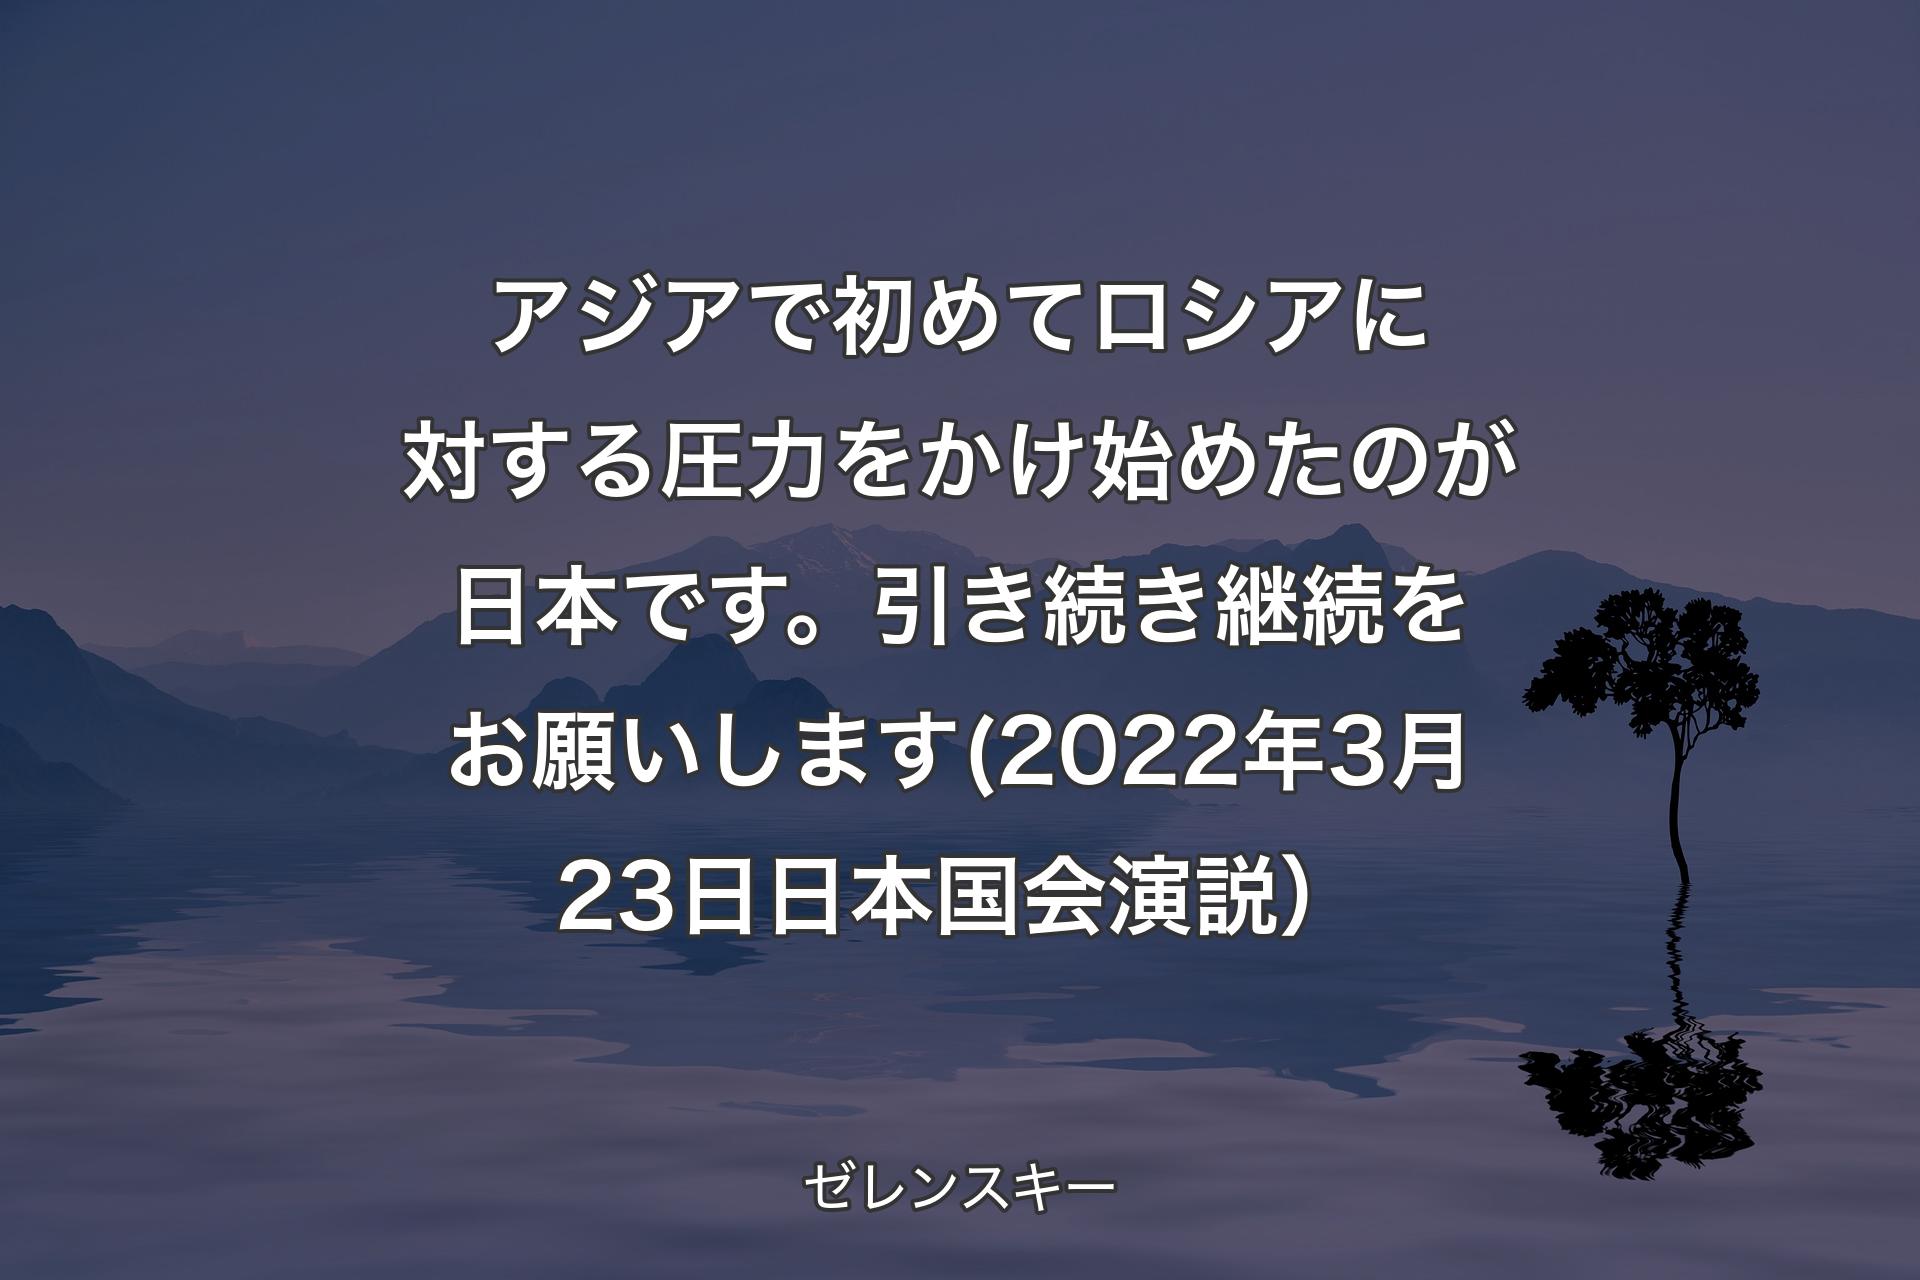 アジアで初めてロシアに対する圧力をかけ始めたのが日本です。引き続き継続をお願いします(2022年3月23日 日本国会演説） - ゼレンスキー